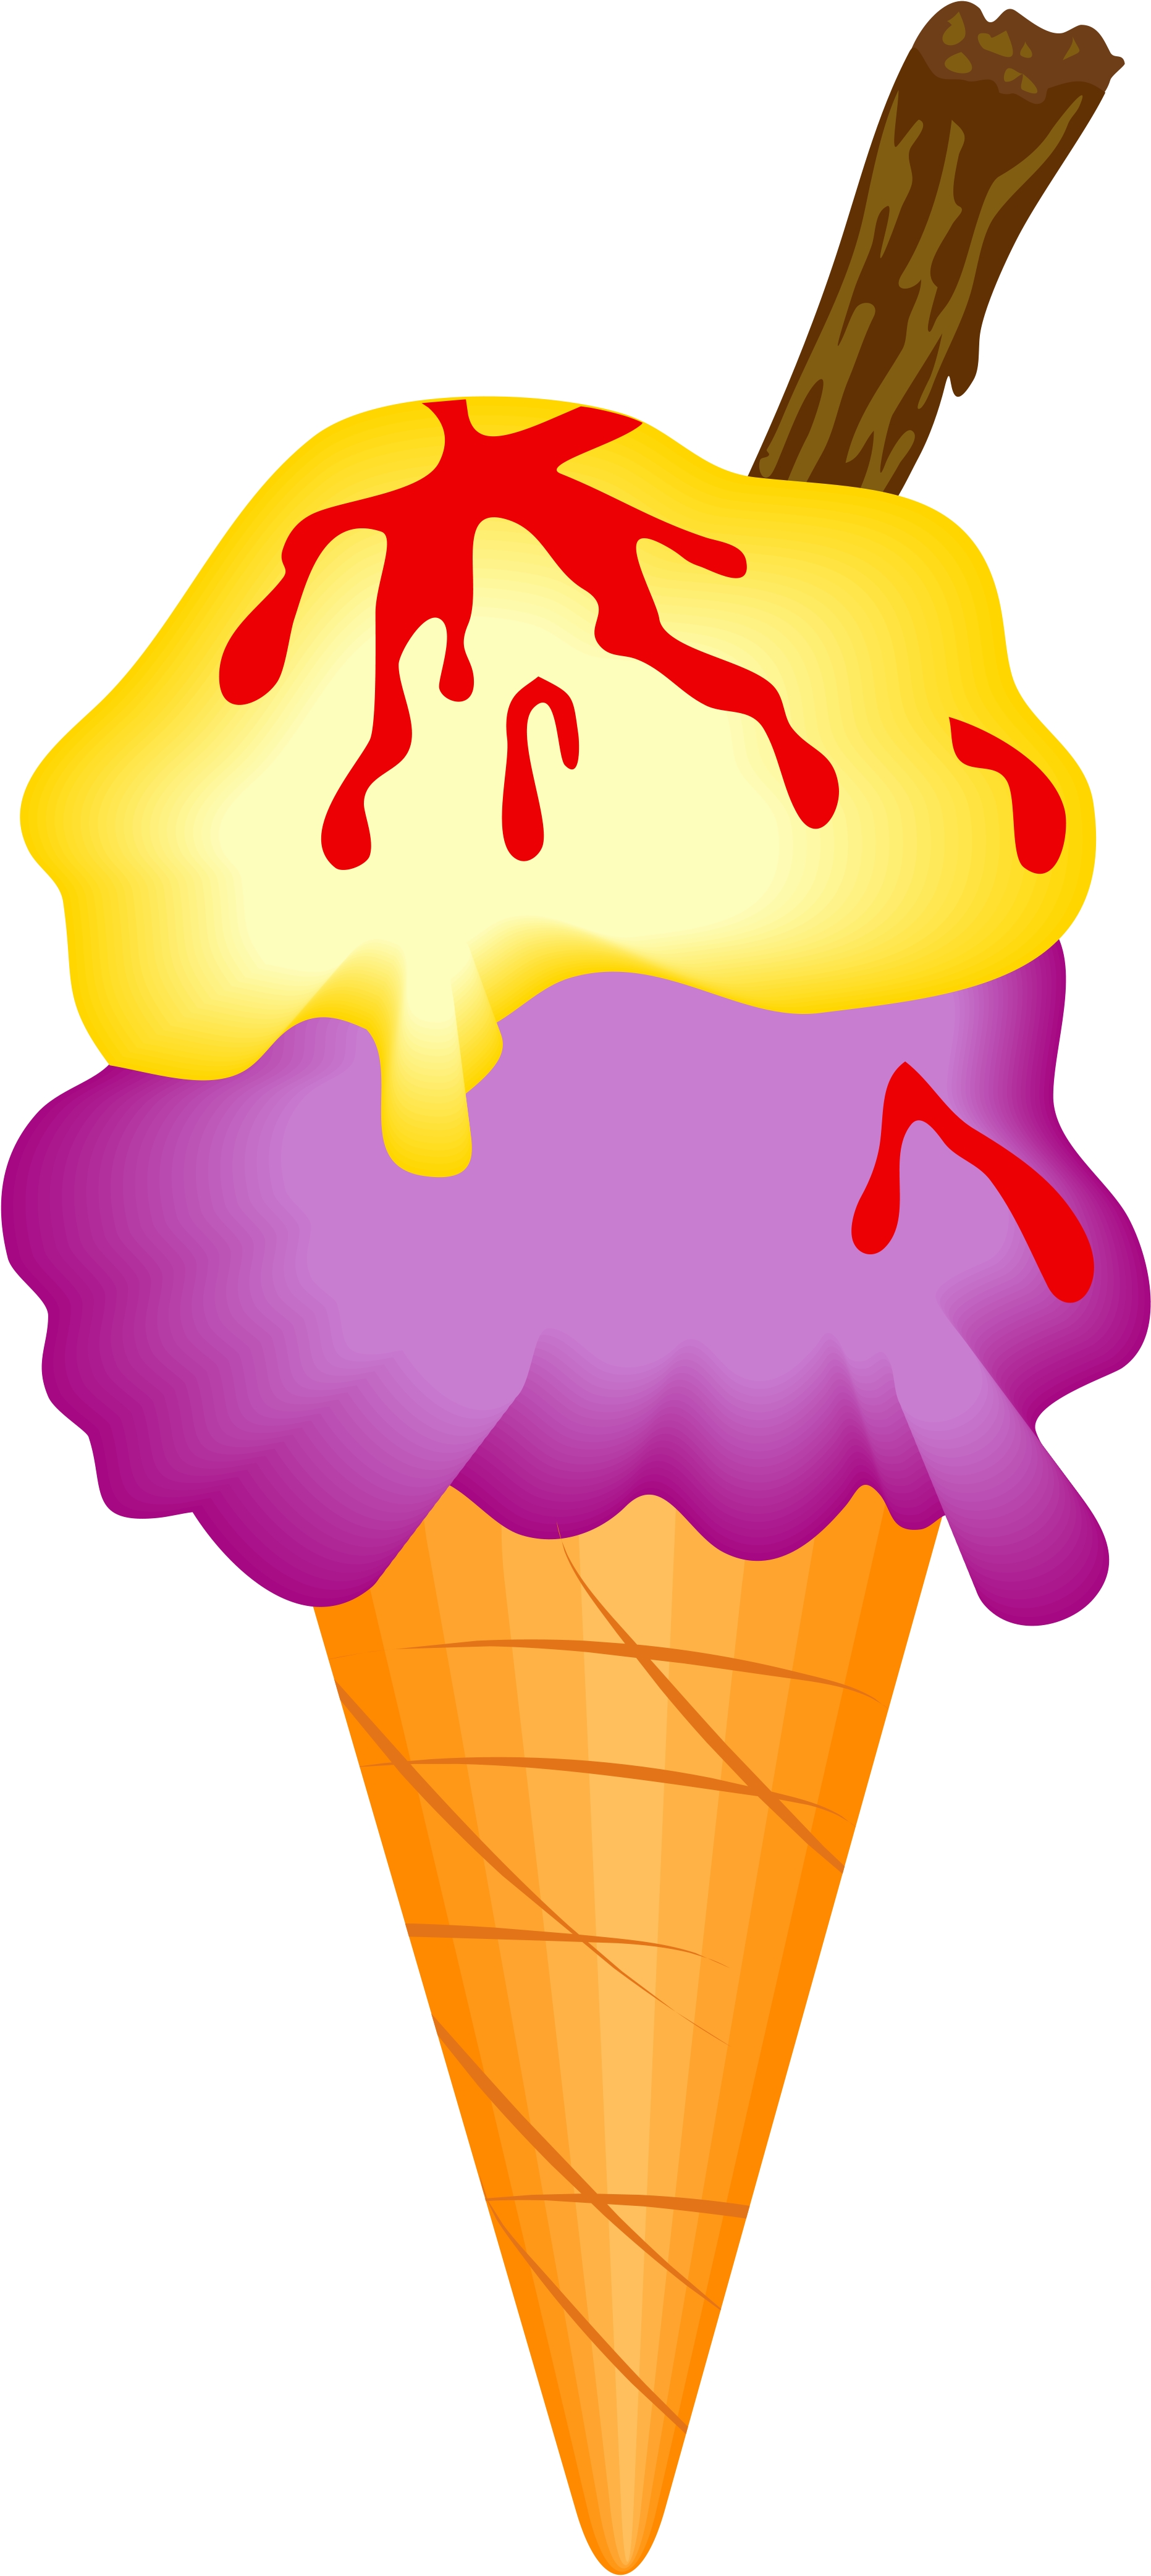 ice cream cone clip art pictures - photo #28